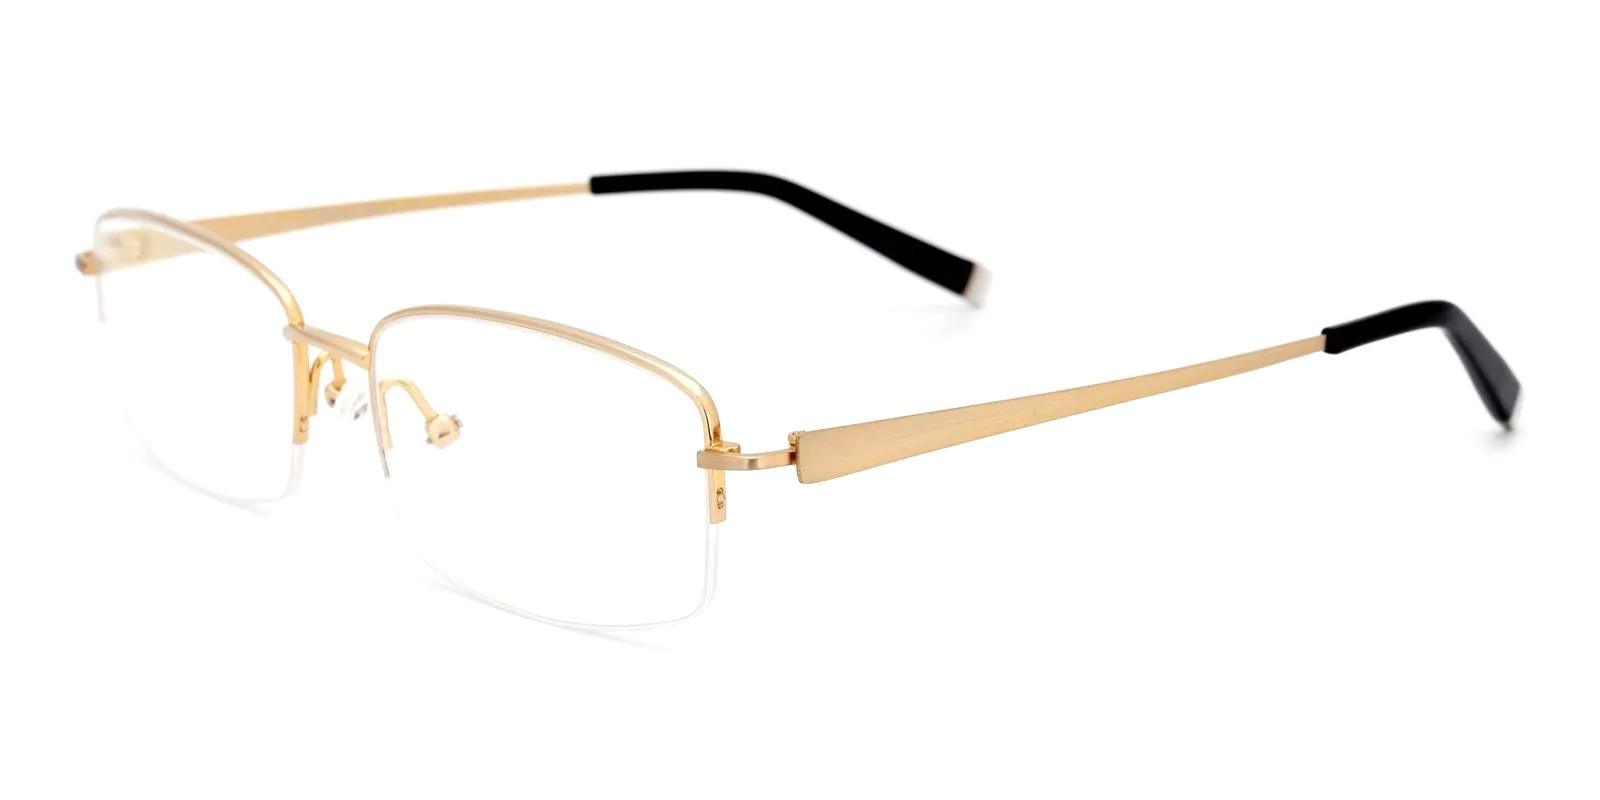 Millen Gold Titanium Eyeglasses , NosePads Frames from ABBE Glasses